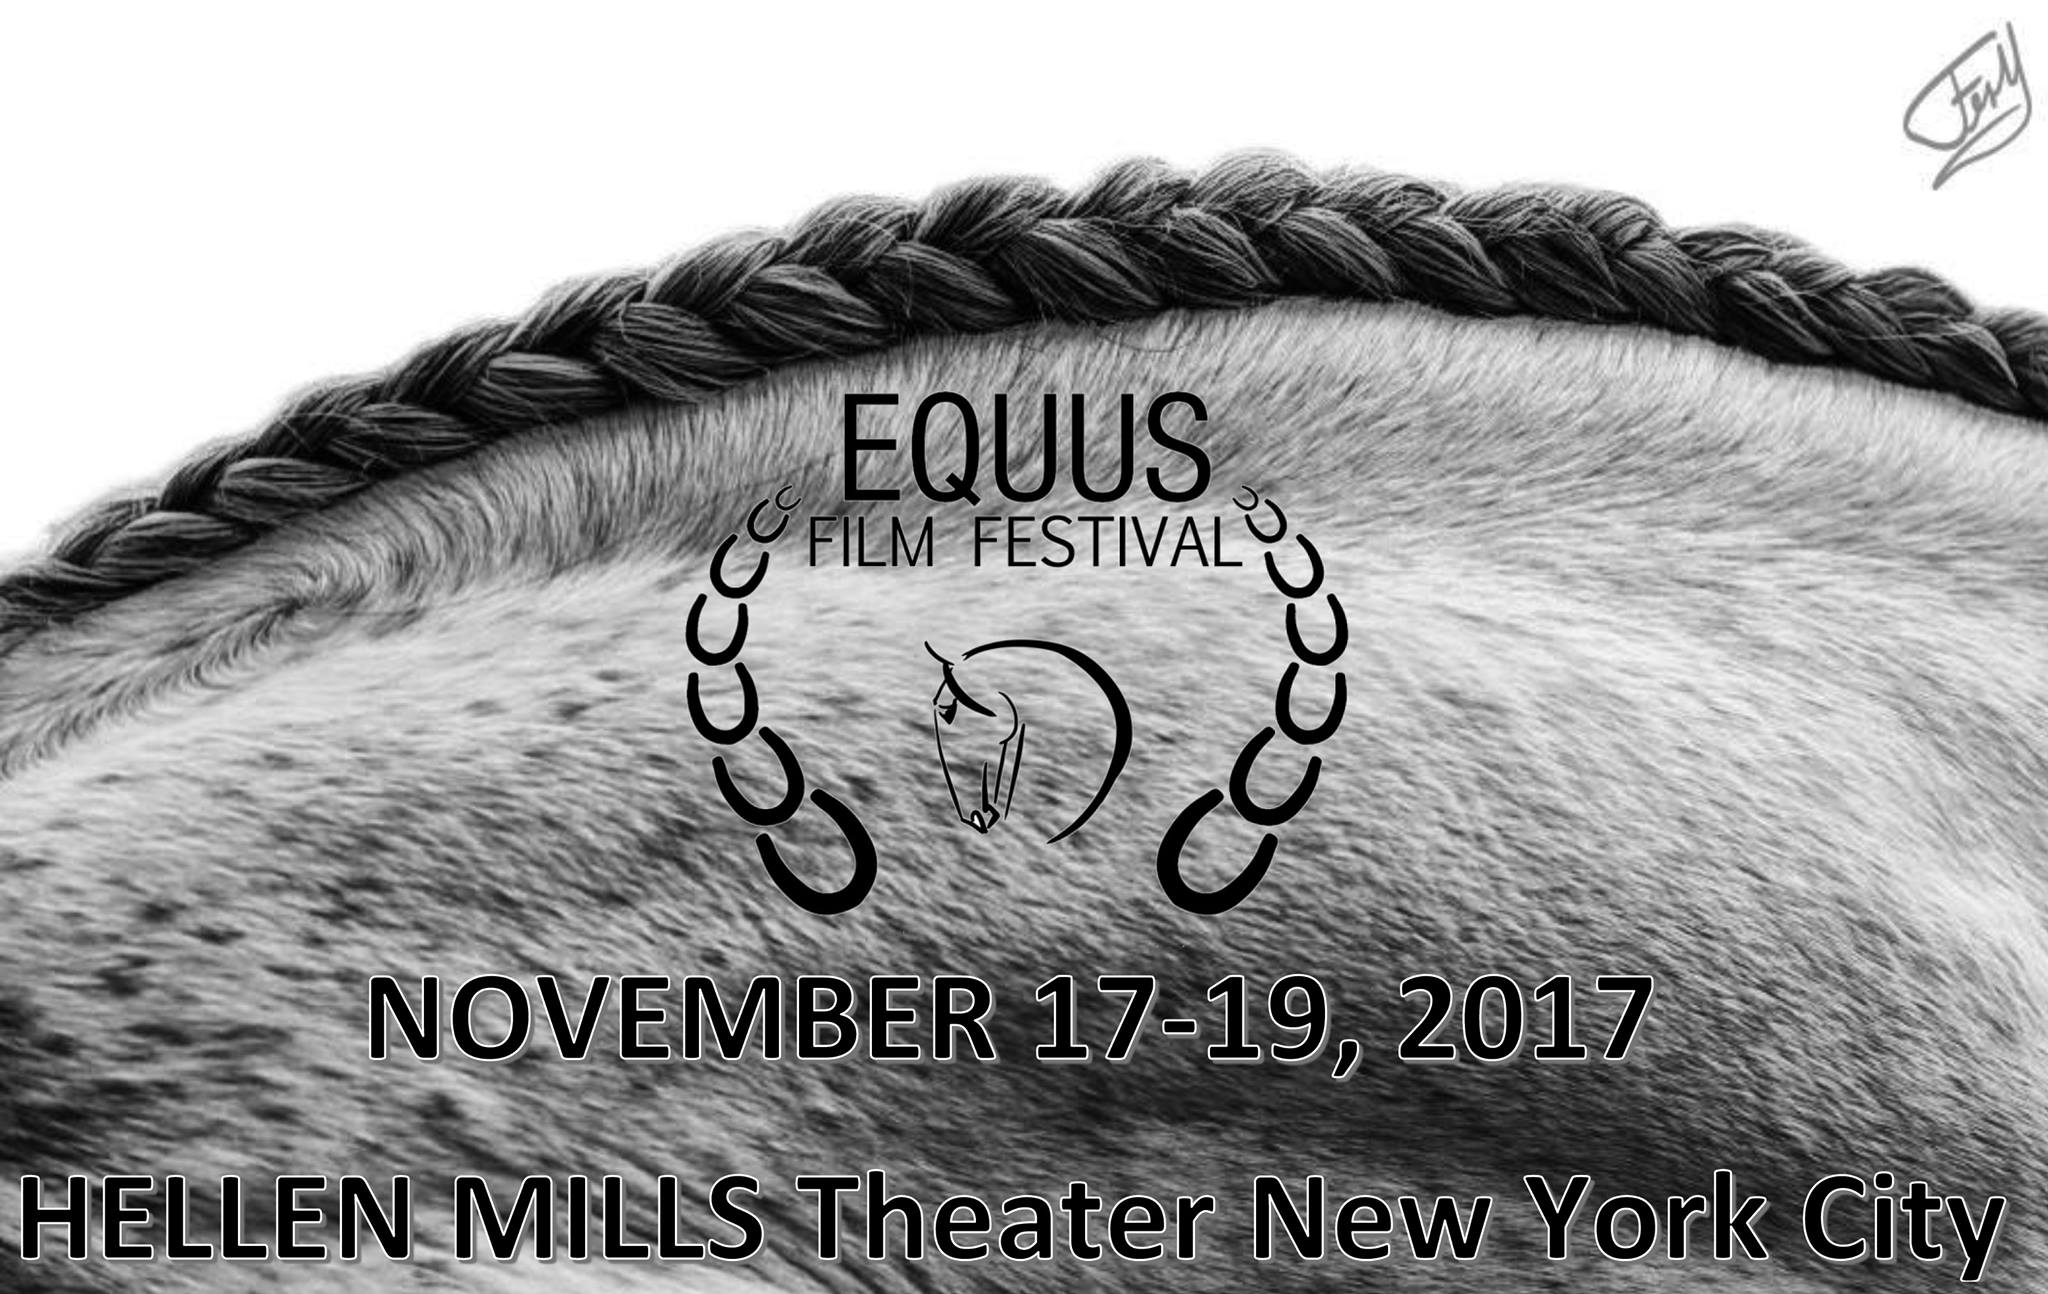 EQUUS Film Festival